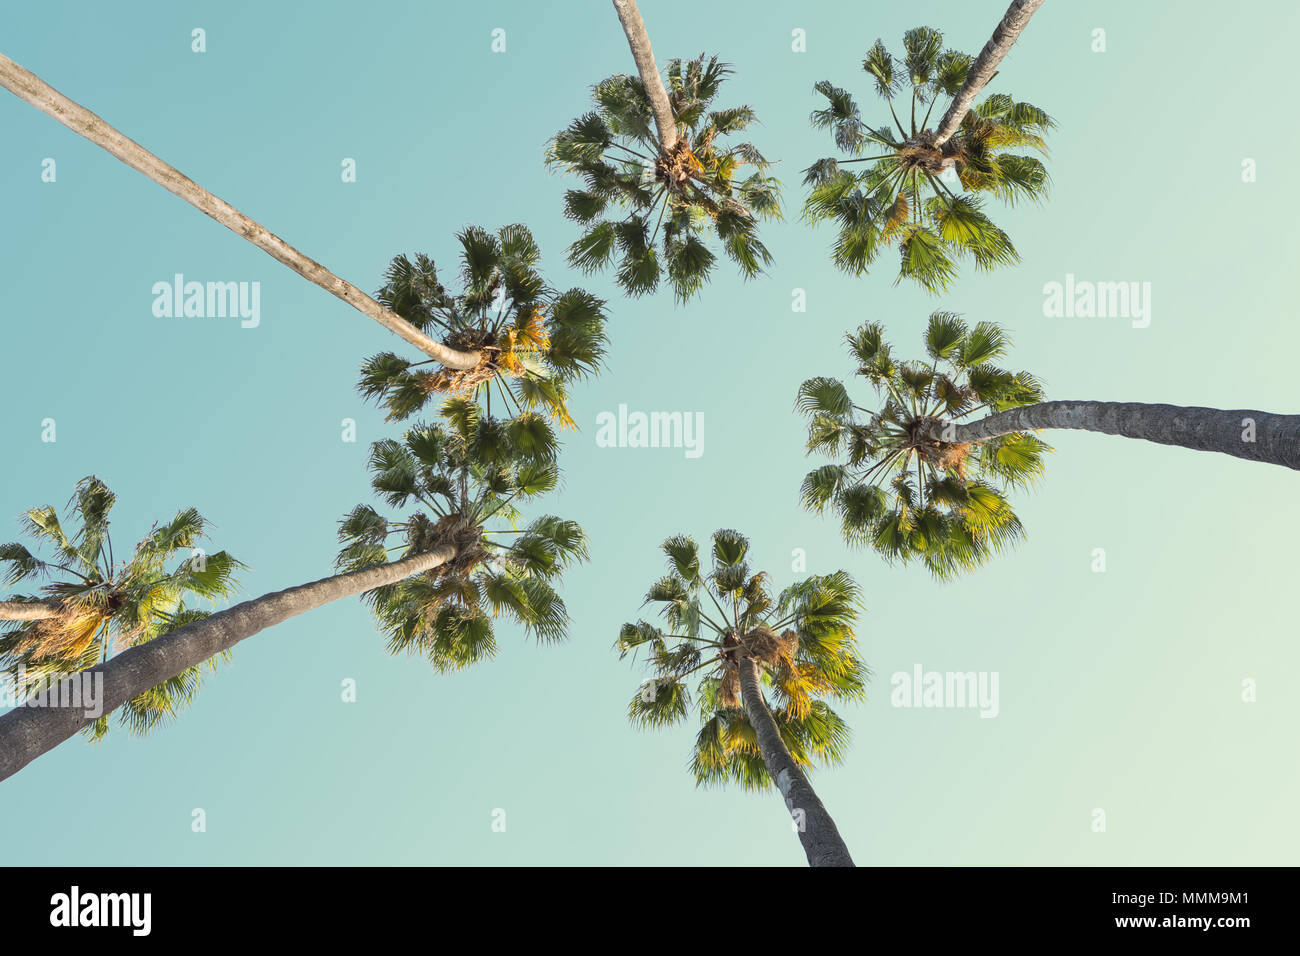 Tropische Palmen auf klaren Sommer Himmel Hintergrund. Low Angle View. Getonten Bild Stockfoto